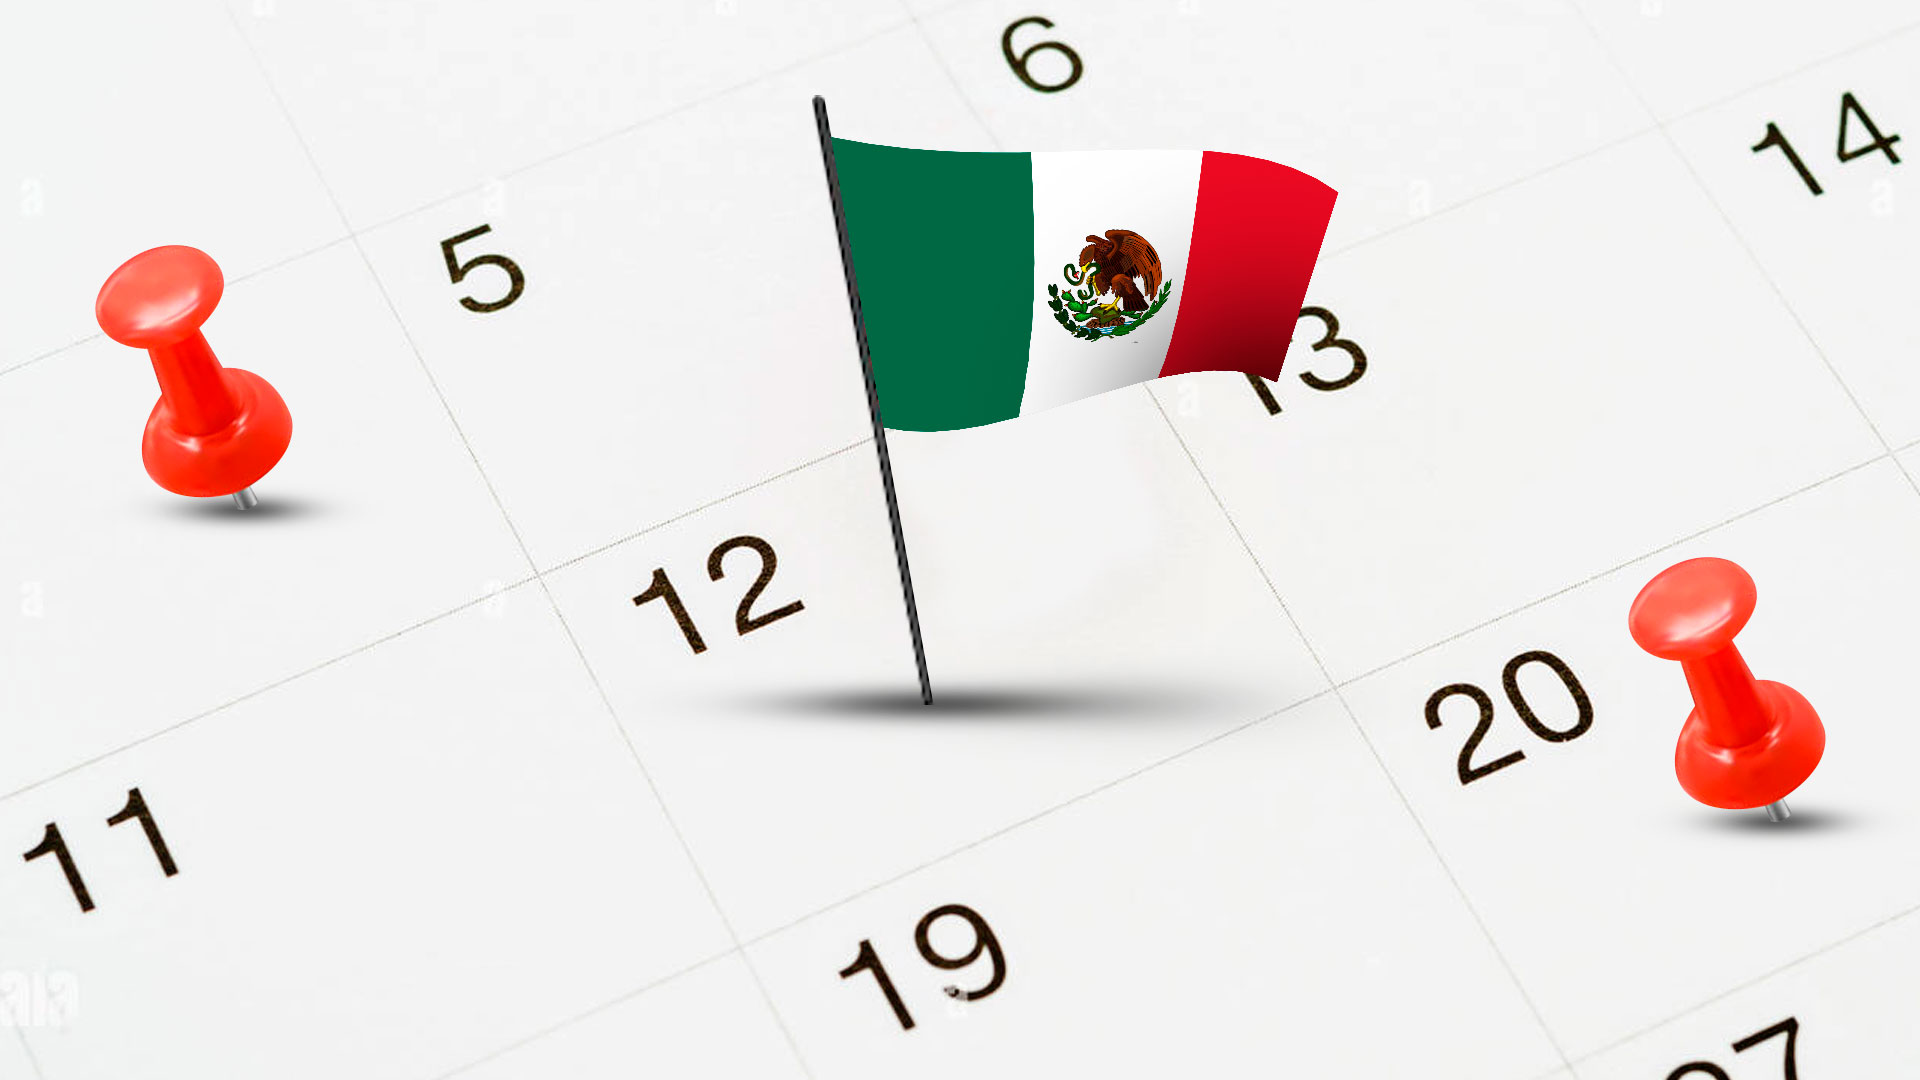 Efemérides de abril en México: a quiénes recordamos y festejamos este mes